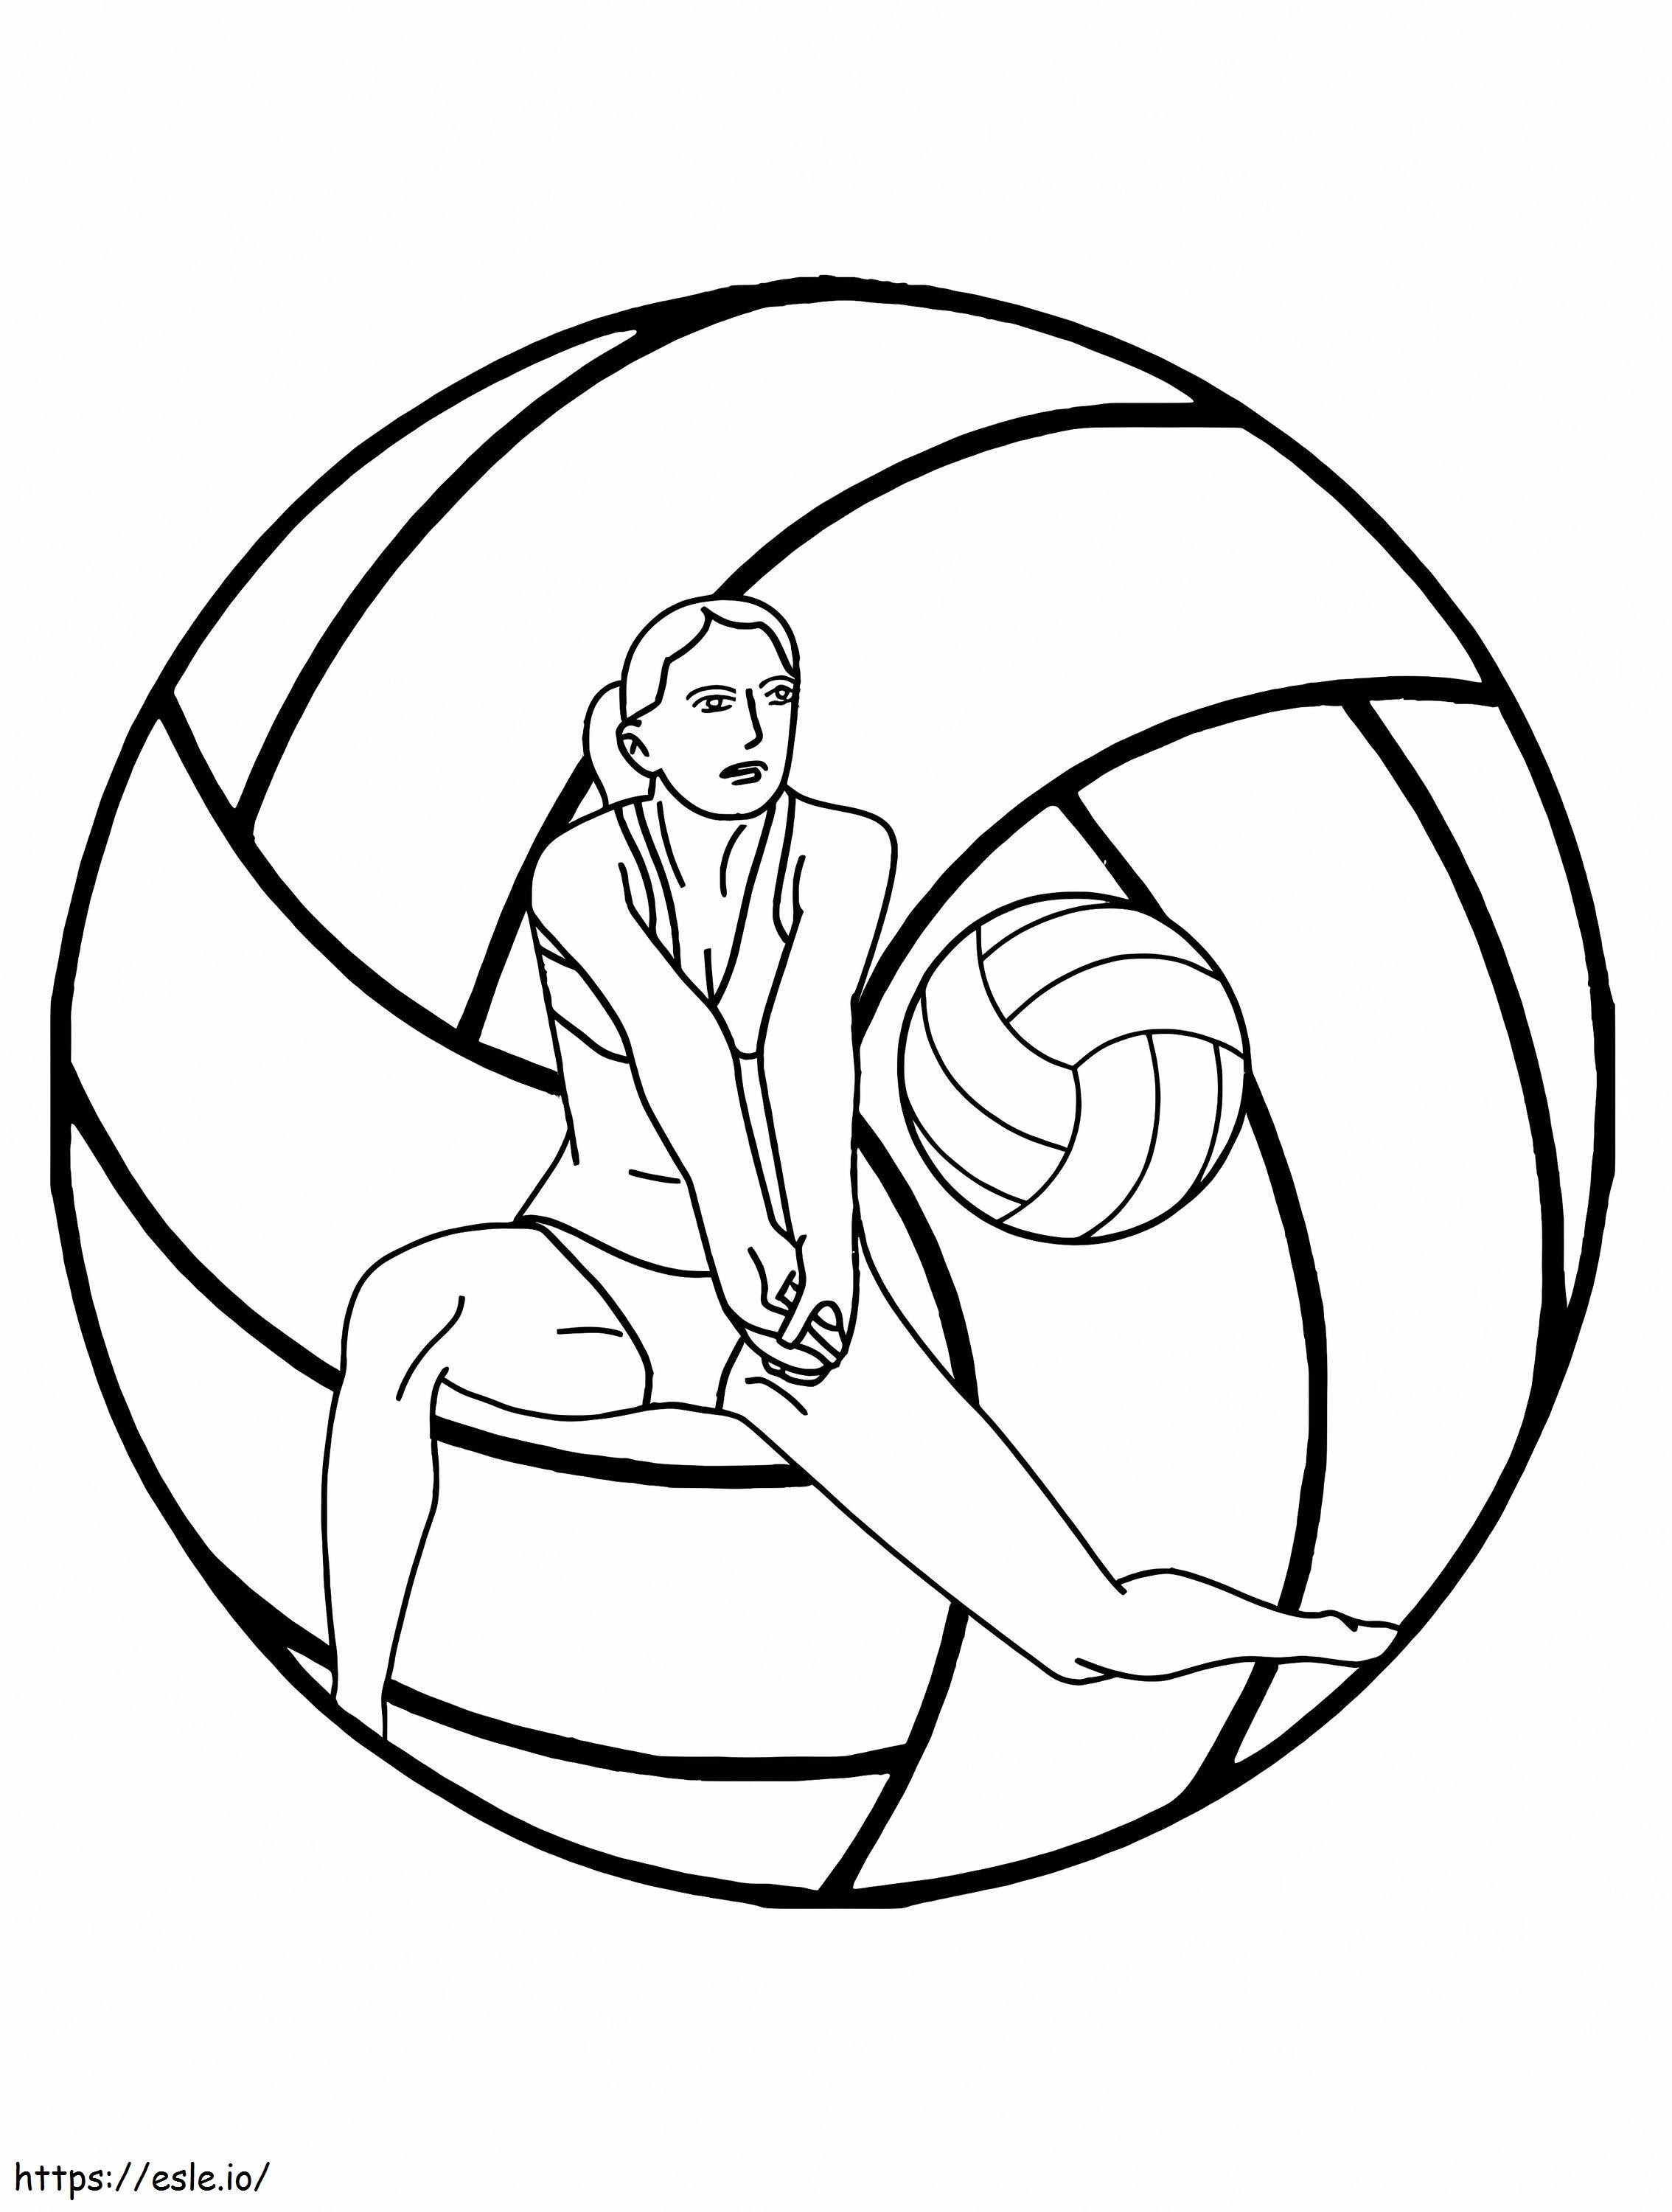 Logotipo del torneo de voleibol para colorear